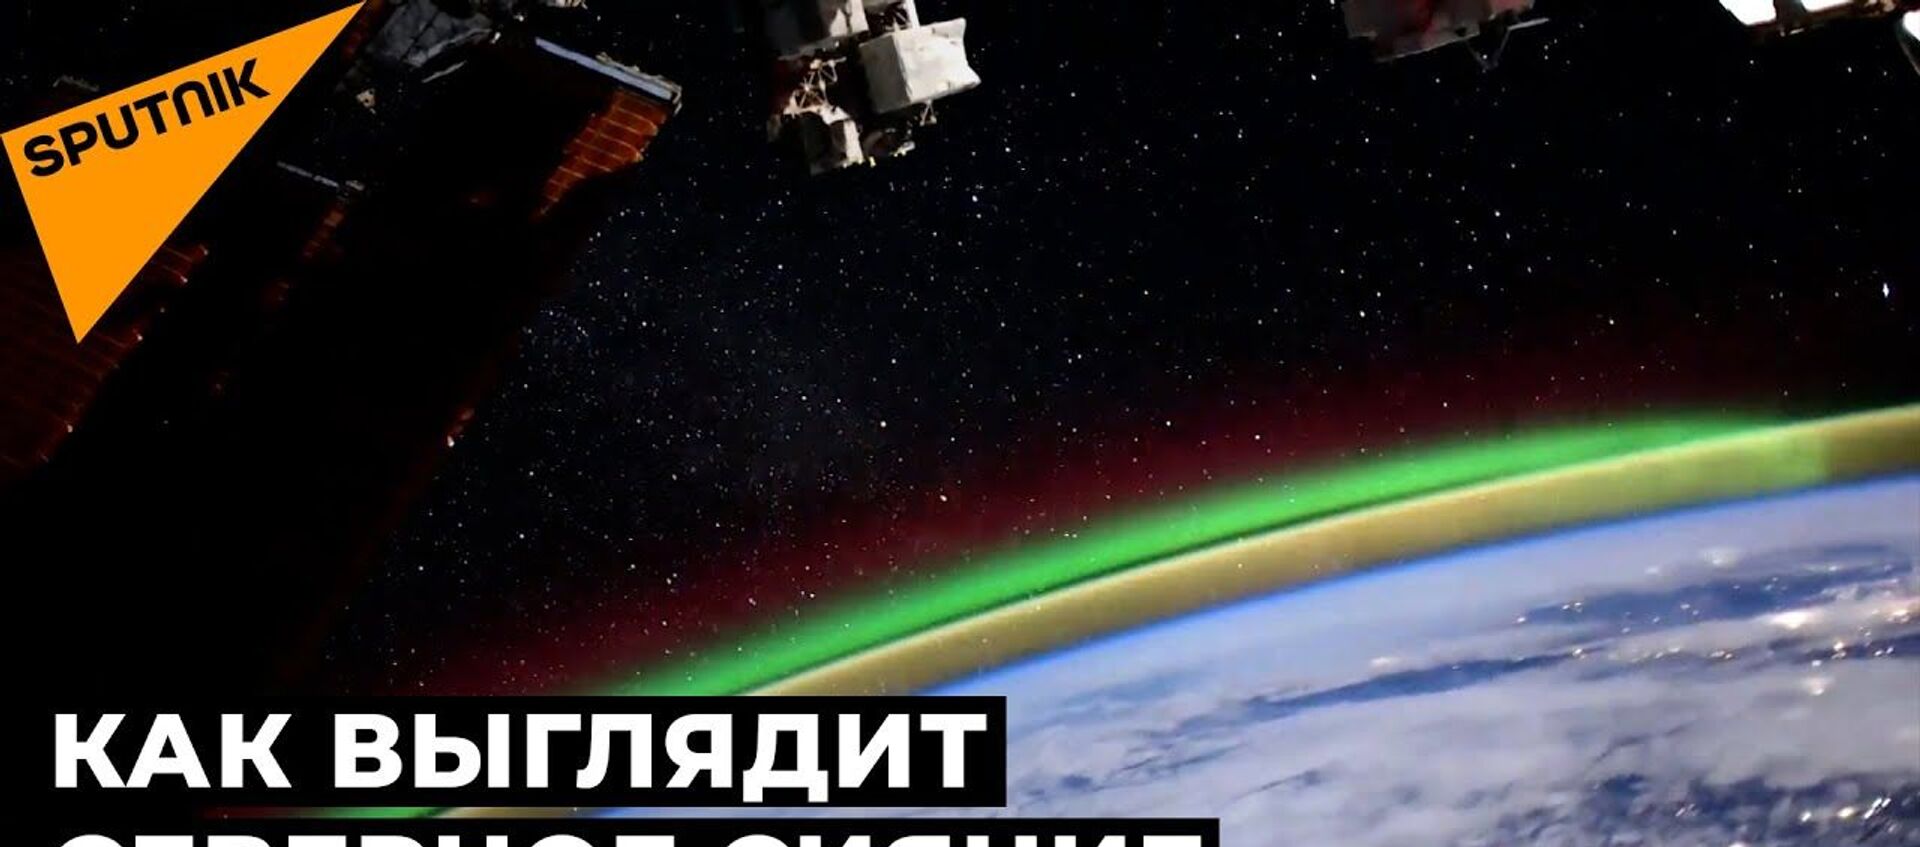 Загадочное зеленое свечение: российский космонавт снял уникальные кадры с борта МКС  - Sputnik Latvija, 1920, 20.01.2021